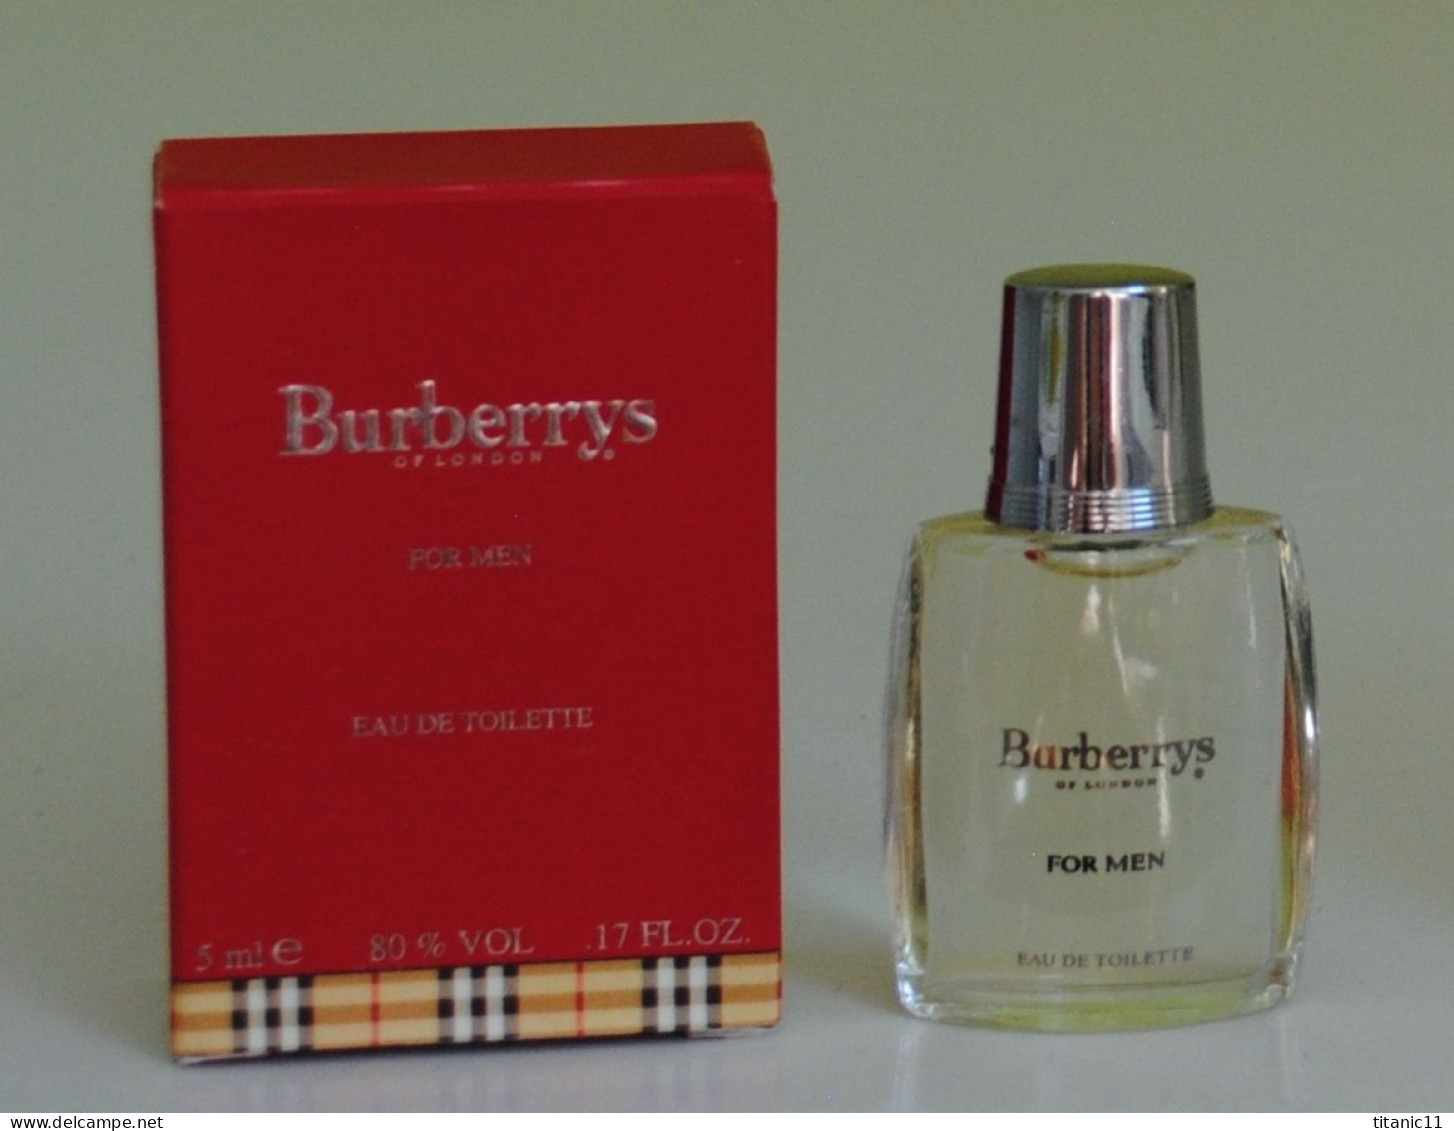 Miniature BURBERRY'S OF LONDON FOR MEN De Burberrys ( Etats-Unis ) - Miniatures Men's Fragrances (in Box)